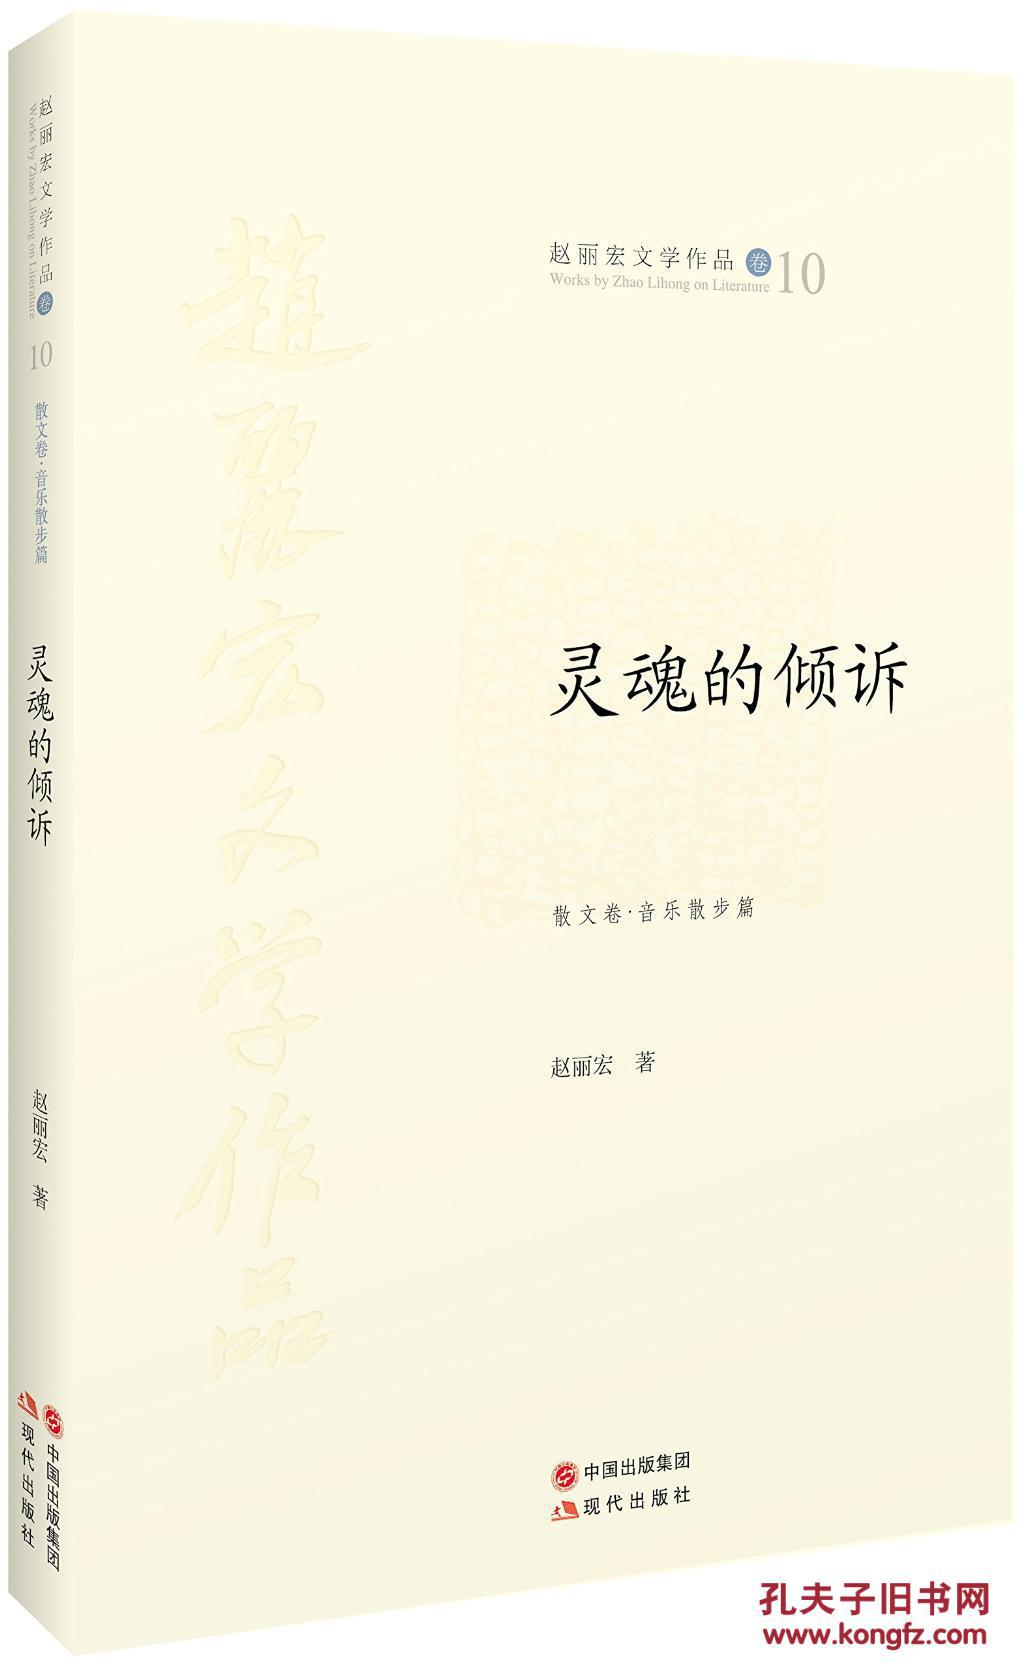 【图】灵魂的倾诉-赵丽宏文学作品卷10-散文卷